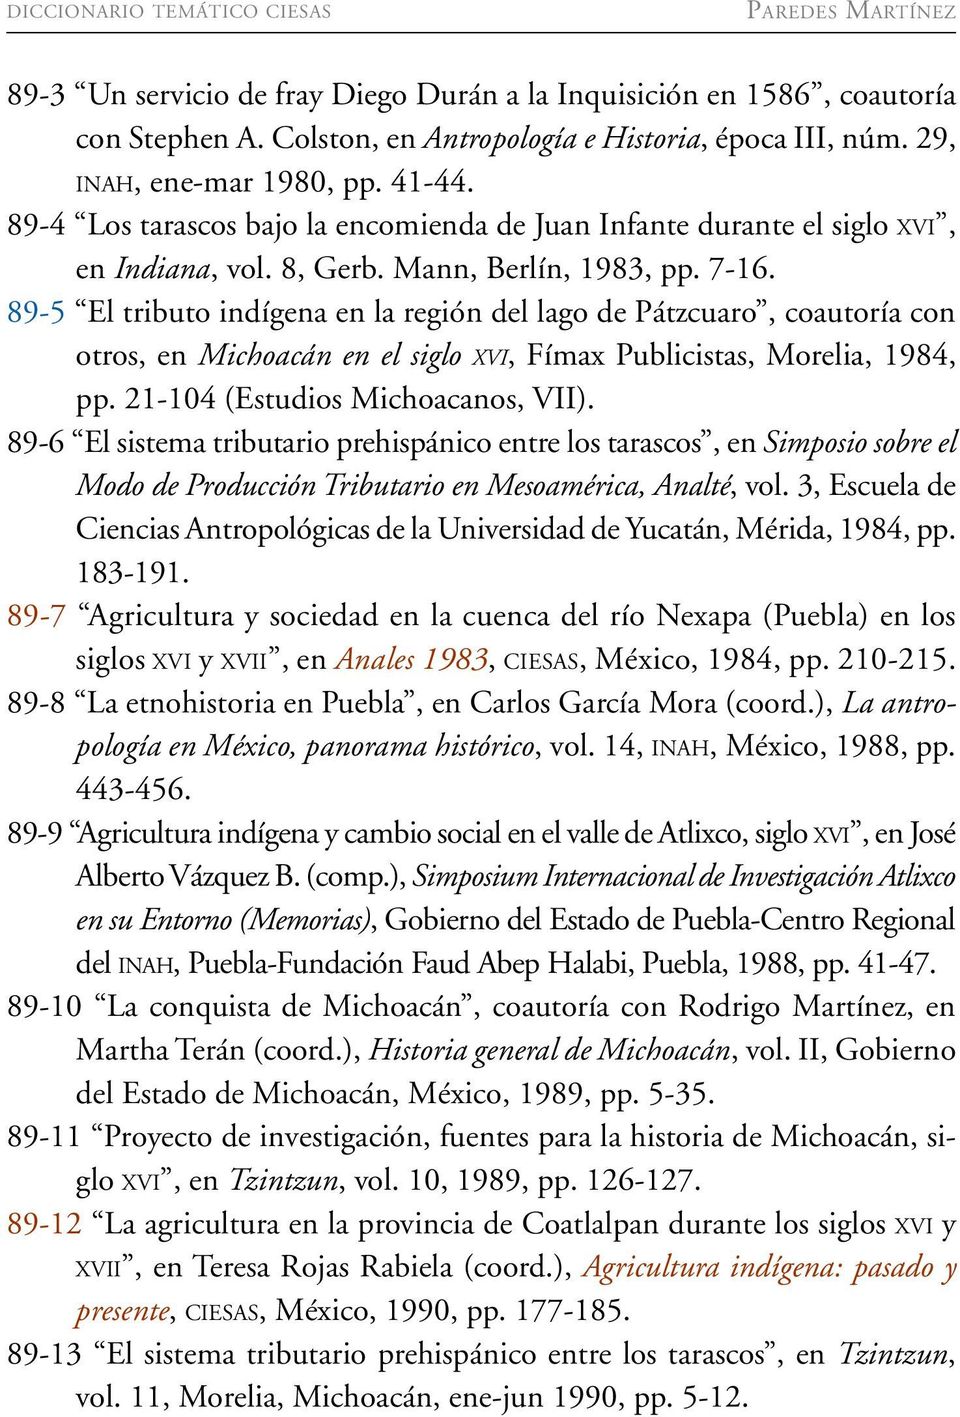 89-5 El tributo indígena en la región del lago de Pátzcuaro, coautoría con otros, en Michoacán en el siglo XVI, Fímax Publicistas, Morelia, 1984, pp. 21-104 (Estudios Michoacanos, VII).